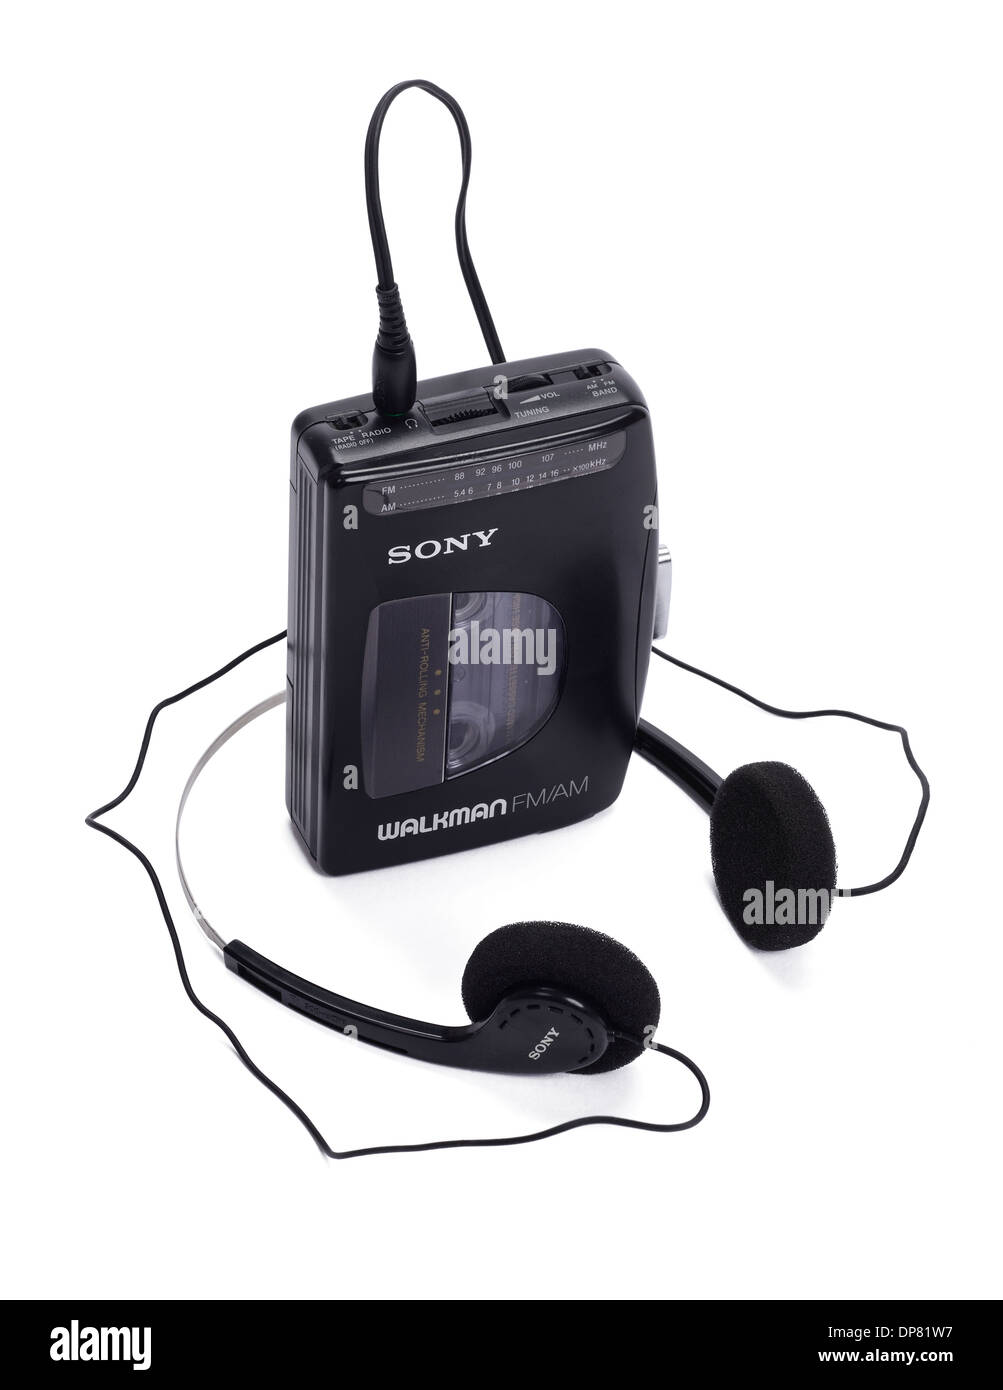 Sony Walkman persönliche Kassettenspieler und Radio aus den 80er Jahren Stockfoto